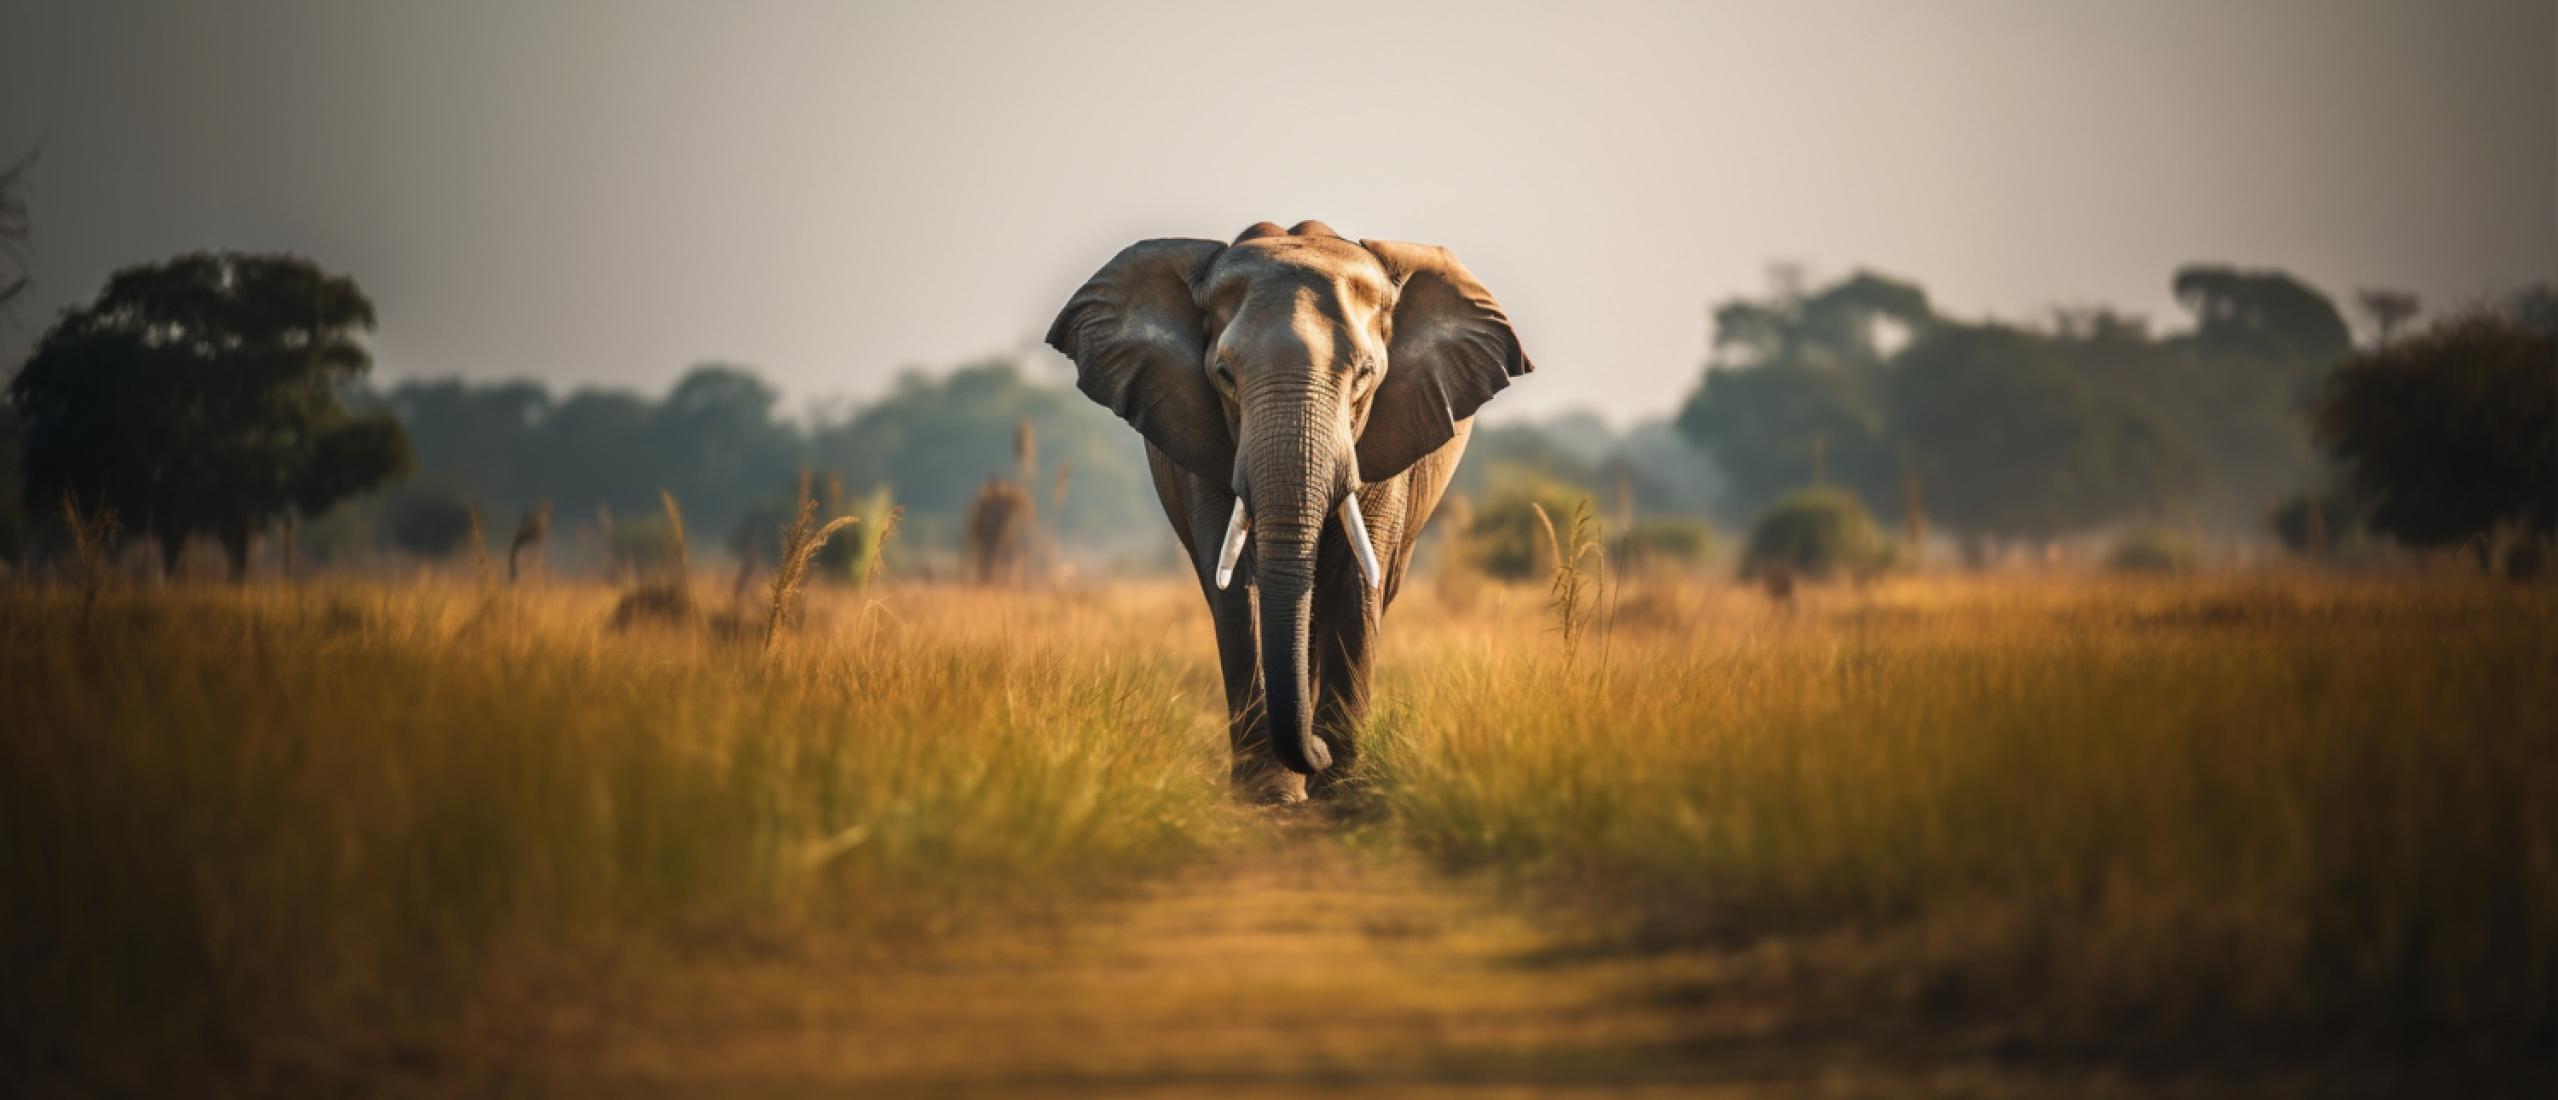 Het verhaal van de ruiter op de olifant (en wat dat met afvallen te maken heeft)